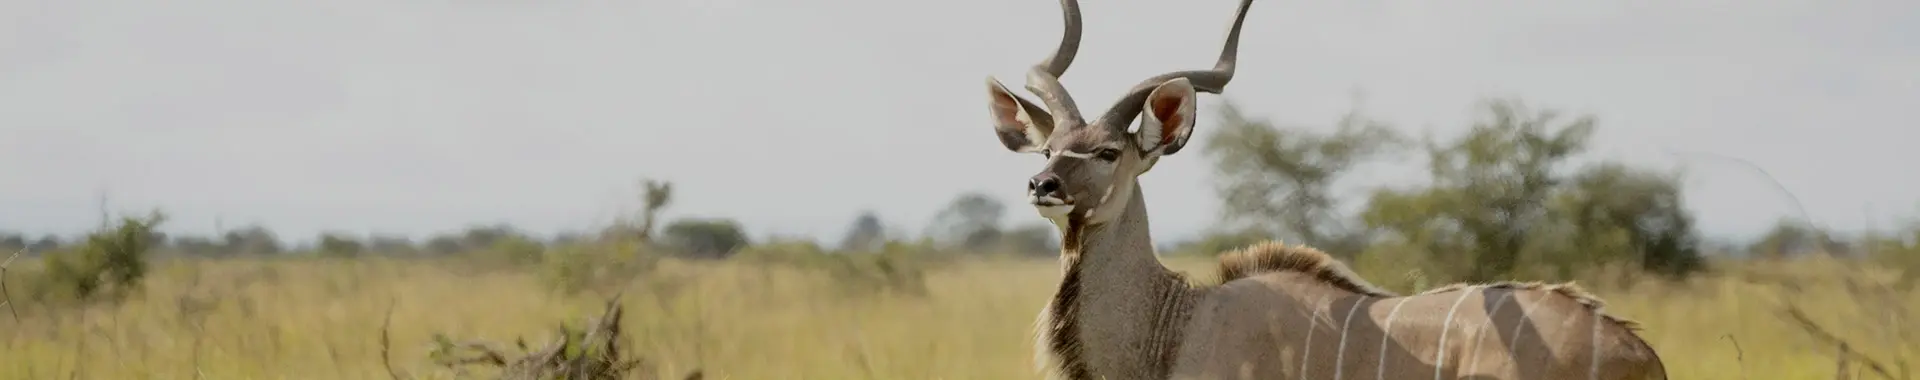 Сафари с антилопами куду в Танзании